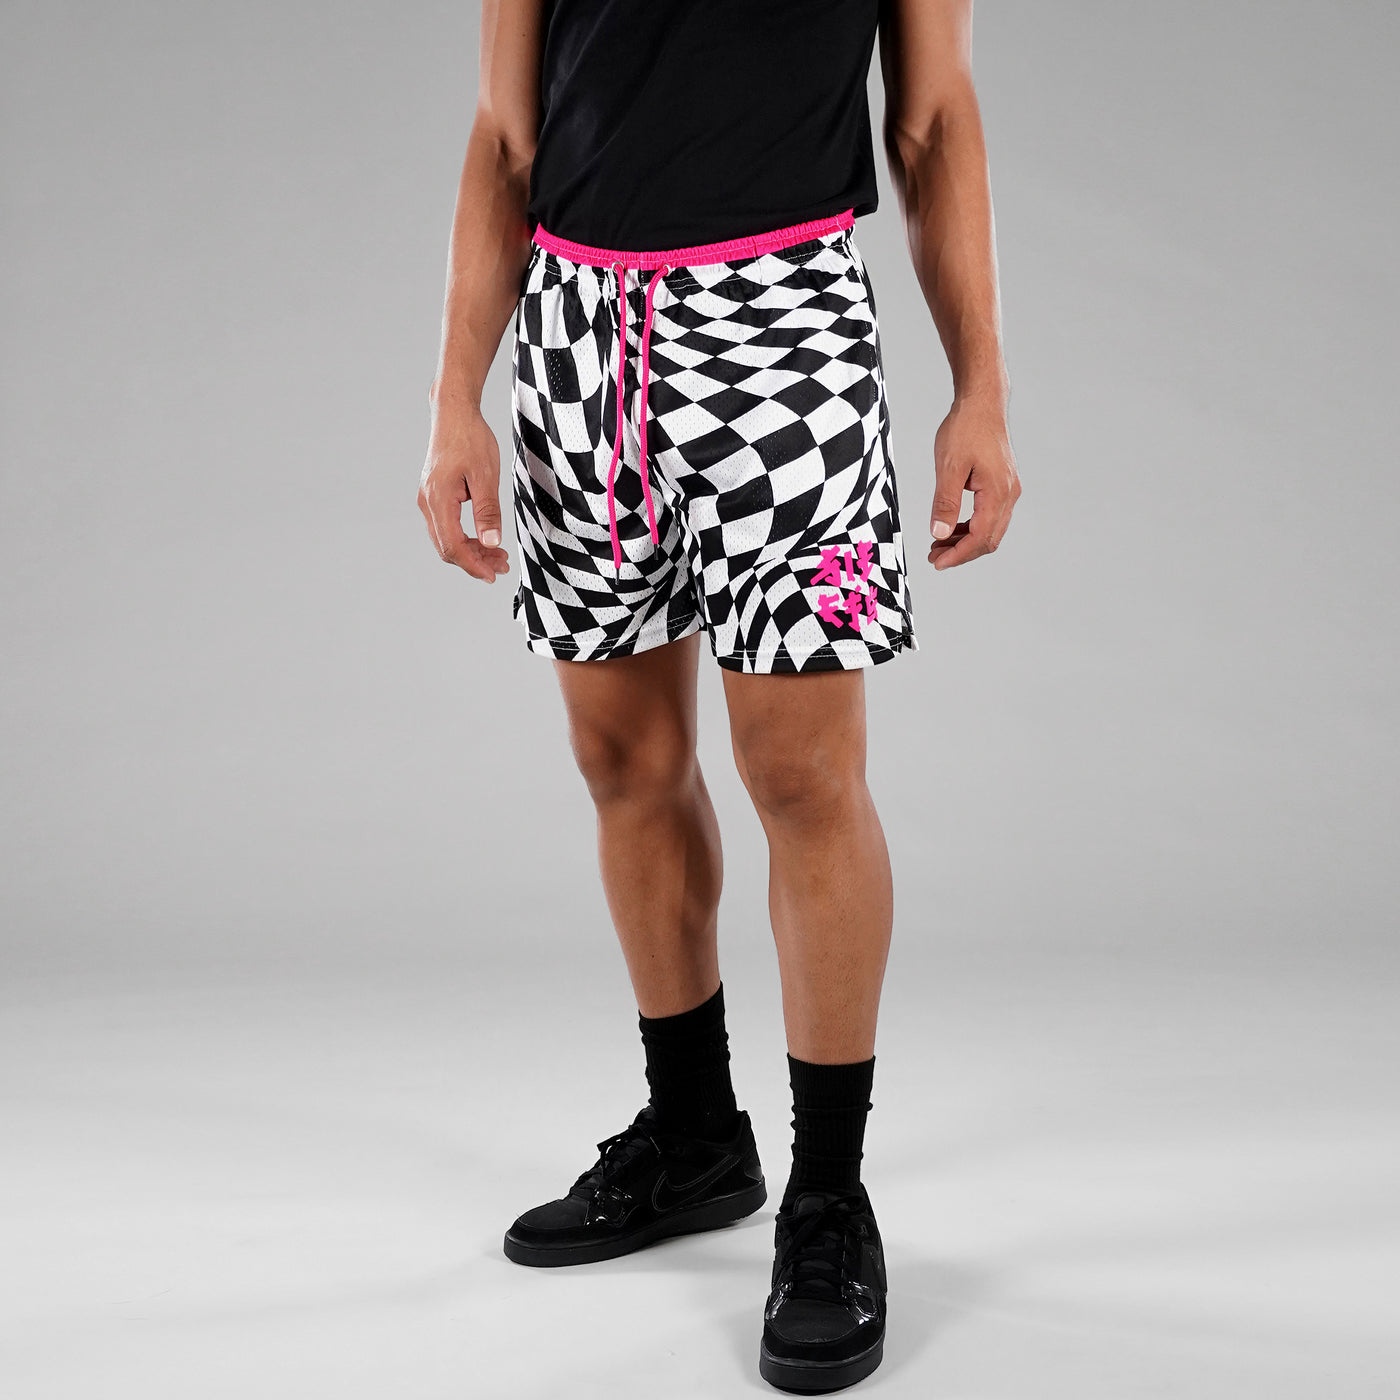 Warped Checkered Finest Pink Shorts